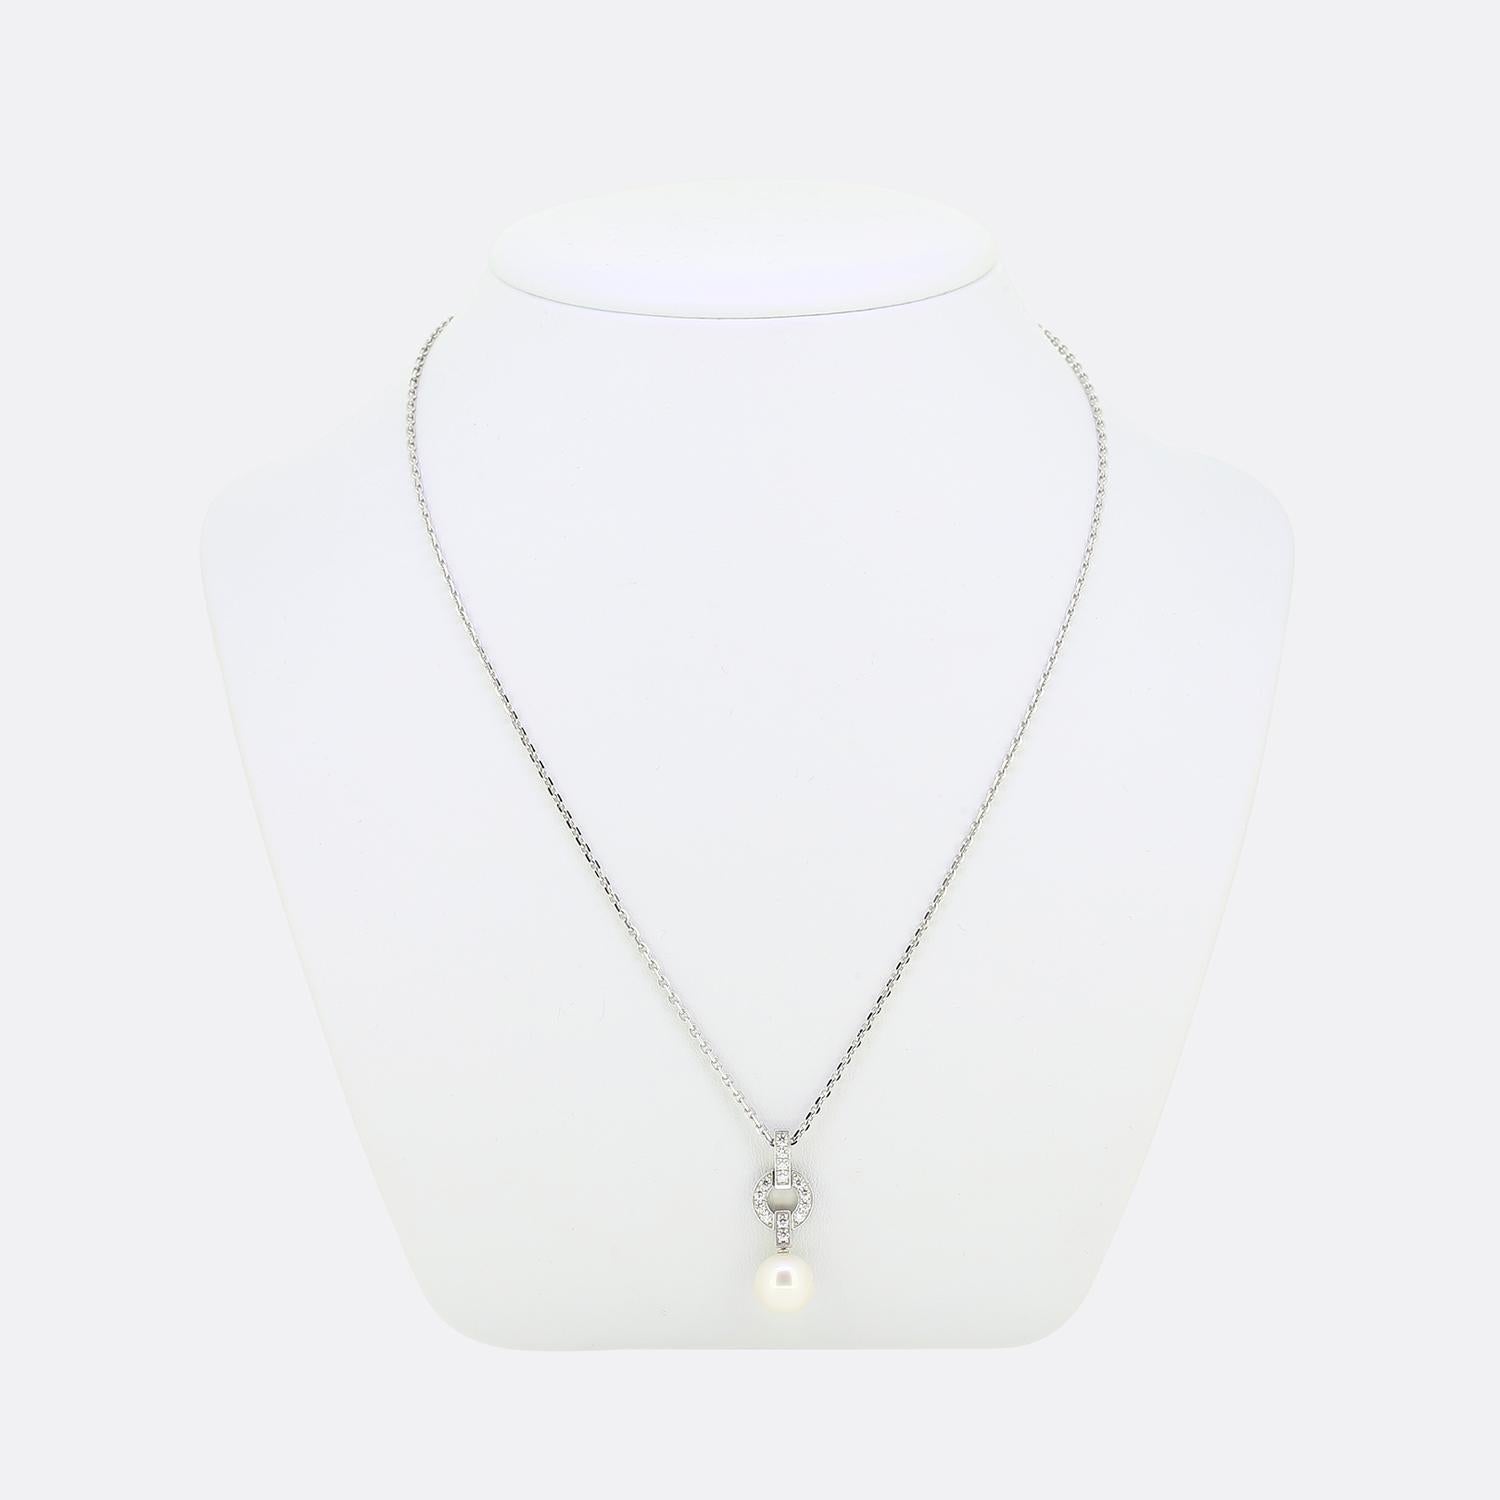 Voici un charmant collier de la maison de joaillerie de renommée mondiale Cartier. Cette pièce élégante présente un pendentif ouvert au design minimaliste, rempli de diamants exquis et terminé par une grosse perle arrondie en dessous.